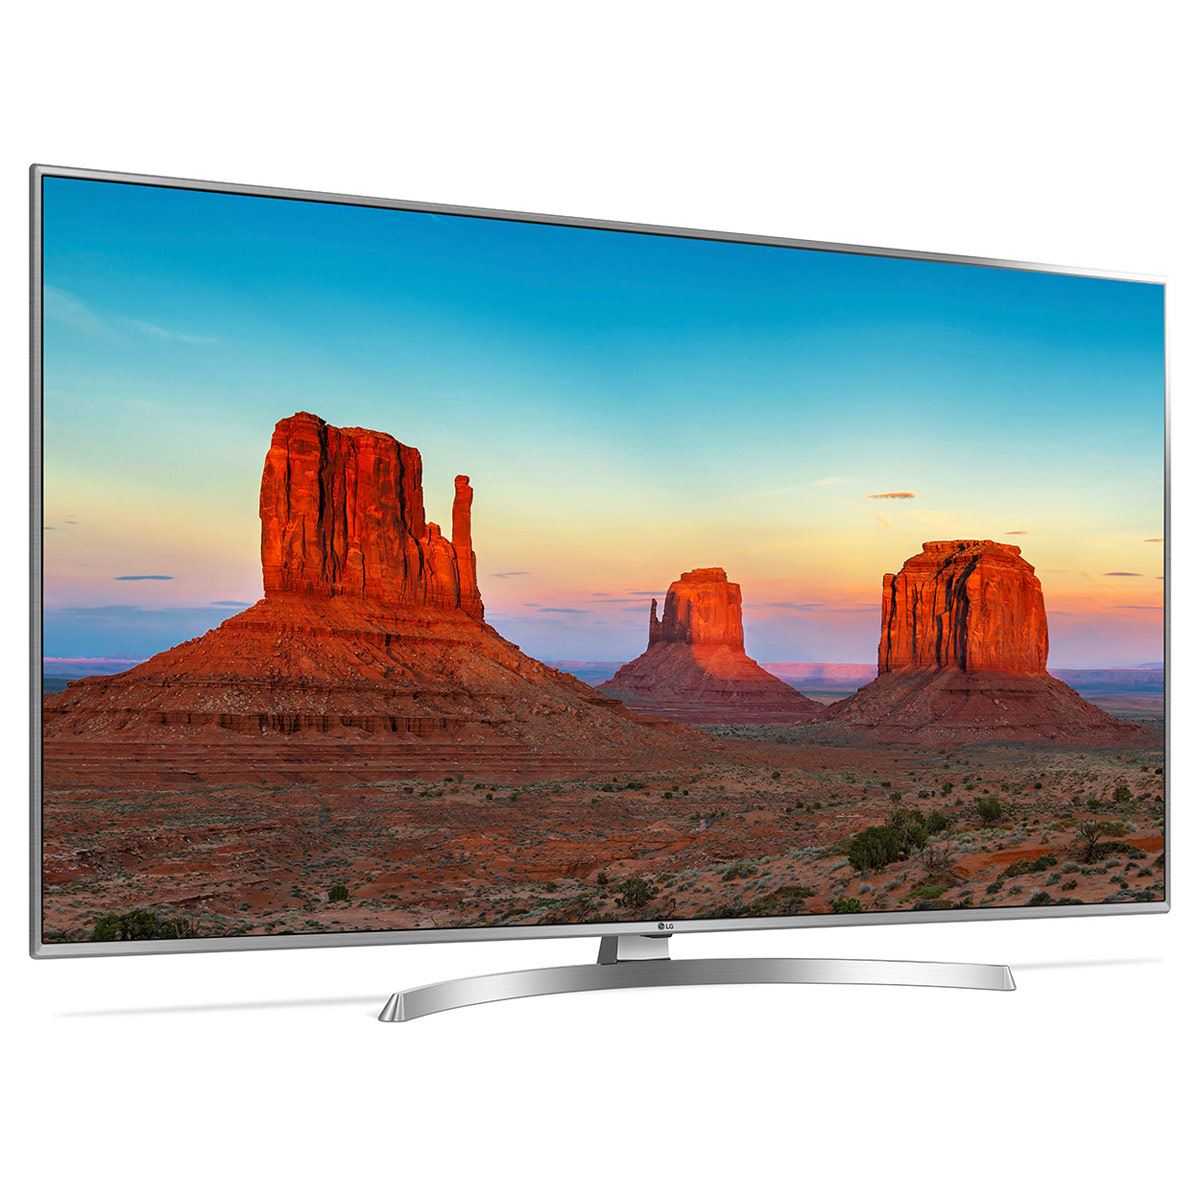 Телевизор lg 55uh850v купить за 89990 руб в екатеринбурге, отзывы, видео обзоры и характеристики